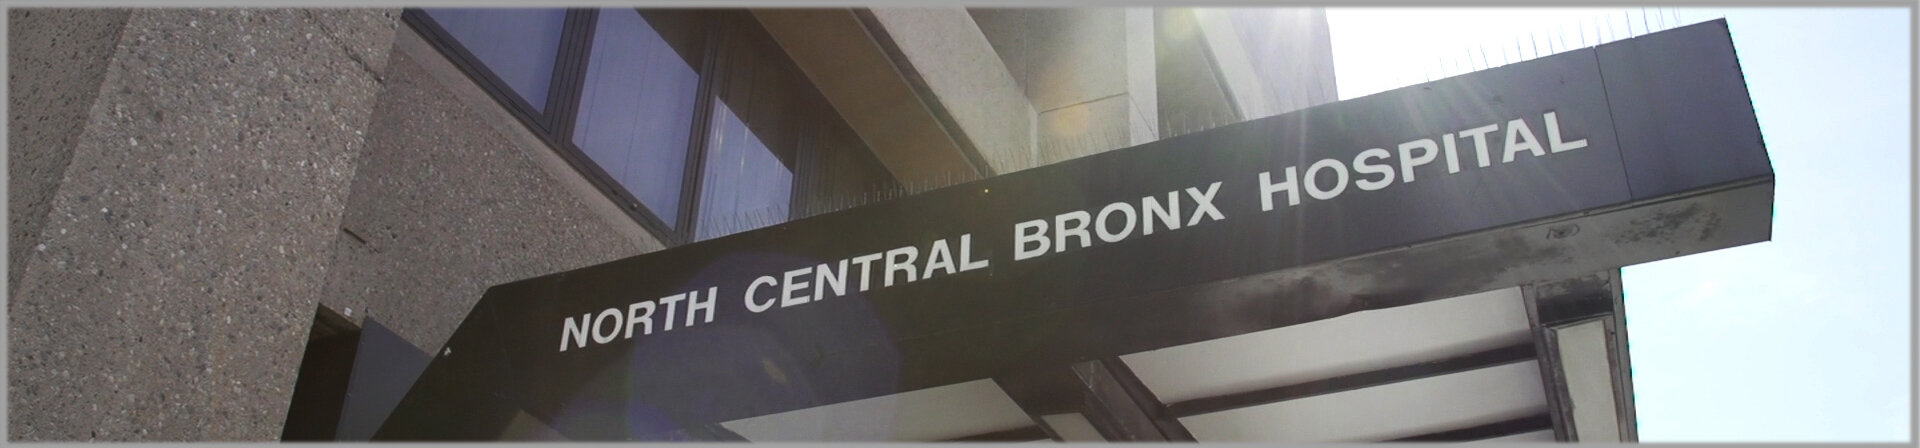 North Central Bronx Hospital de Nueva York.